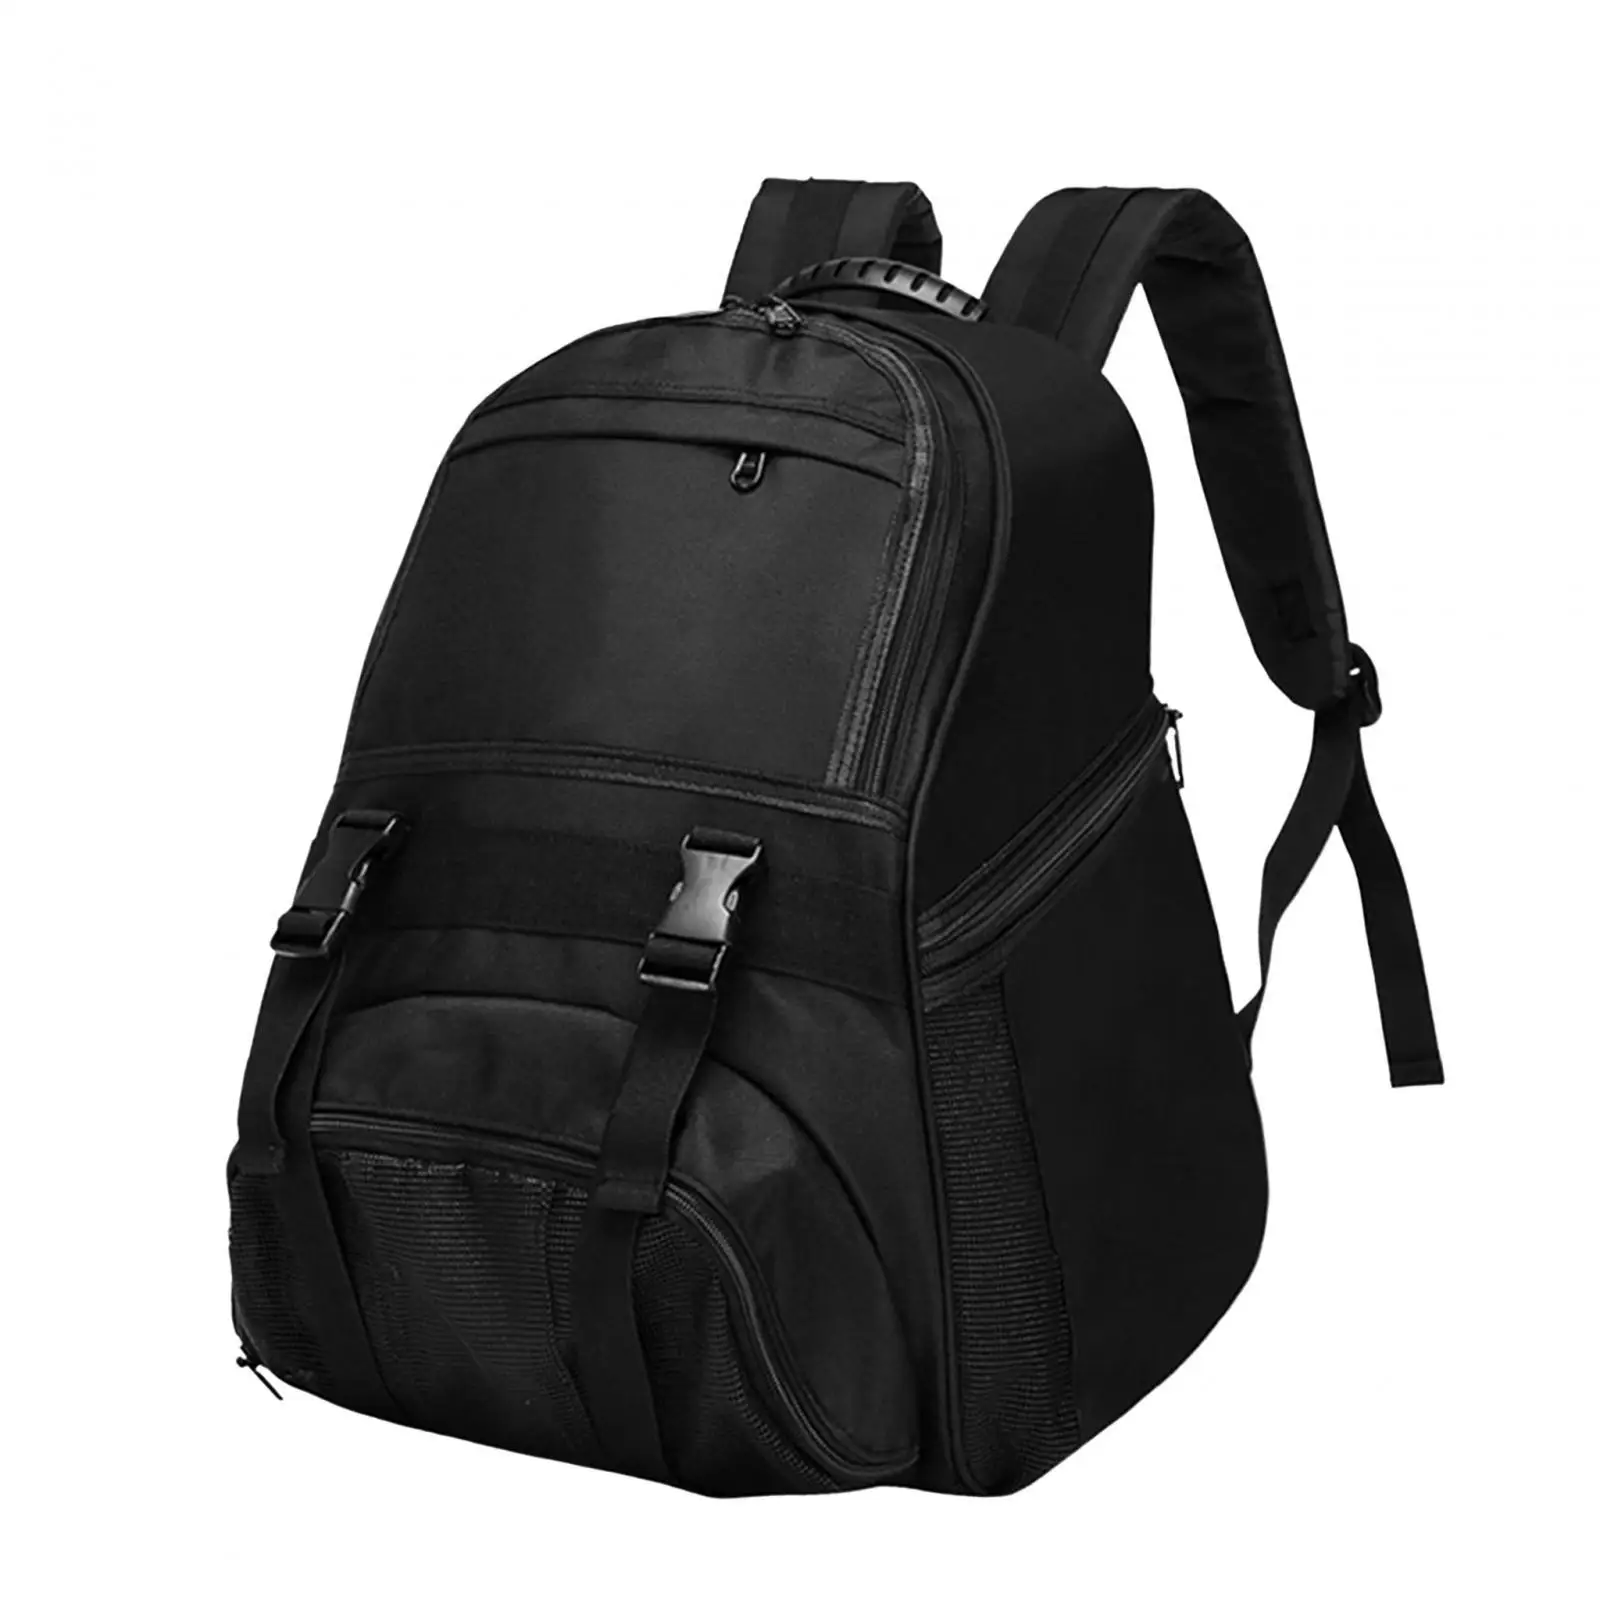 Basketball Carrying Backpack Bag Football Bag Storage Bag Single Ball Bag for Basketball Rugby Ball Football Volleyball